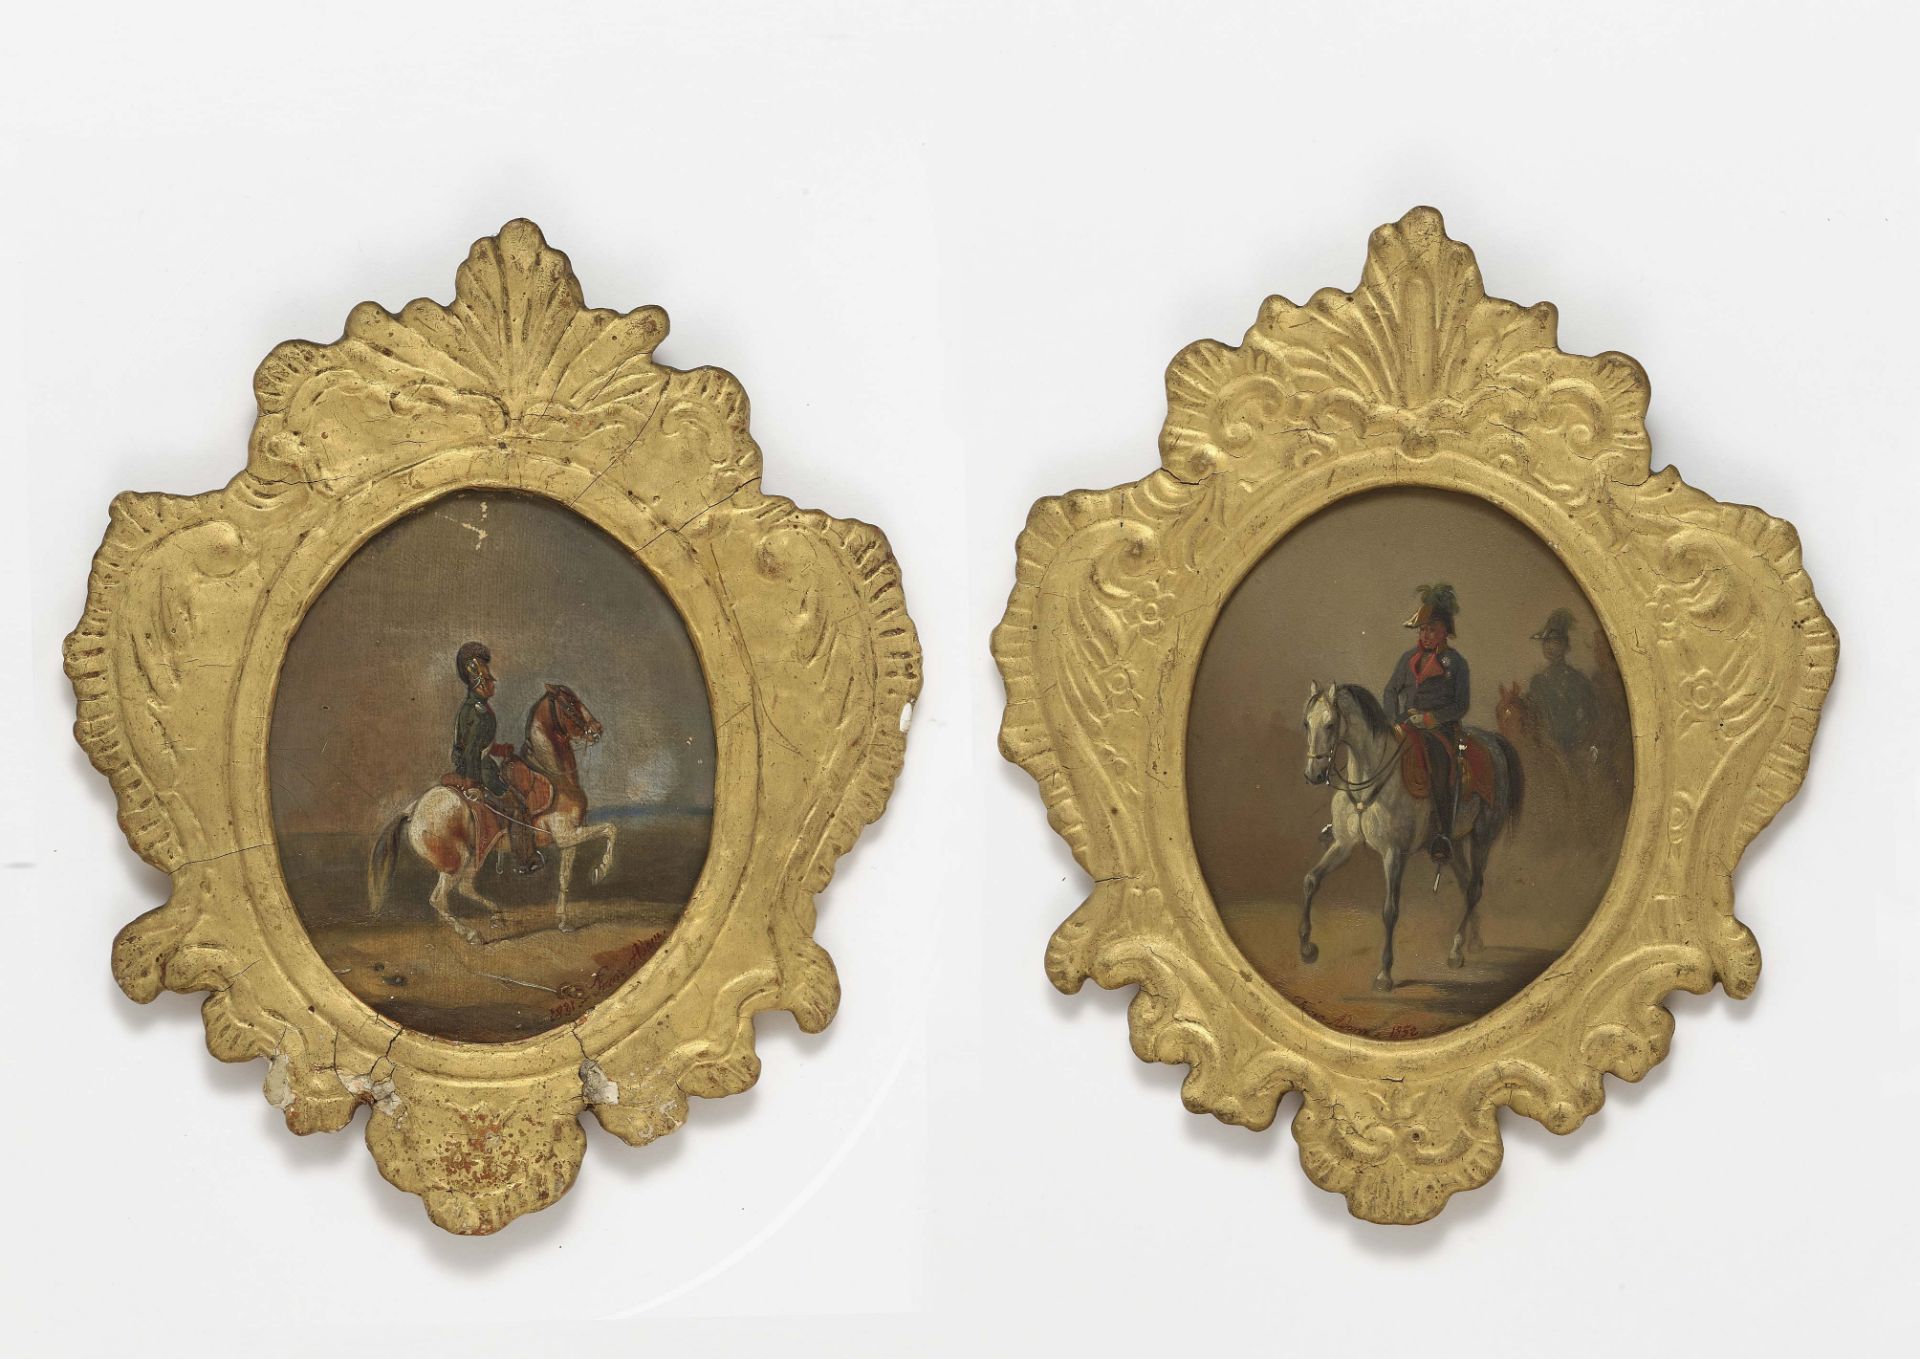 Reiter mit Raupenhelm - Feldmarschall Johann Josef Wenzel Graf von Radetzky zu Pferd